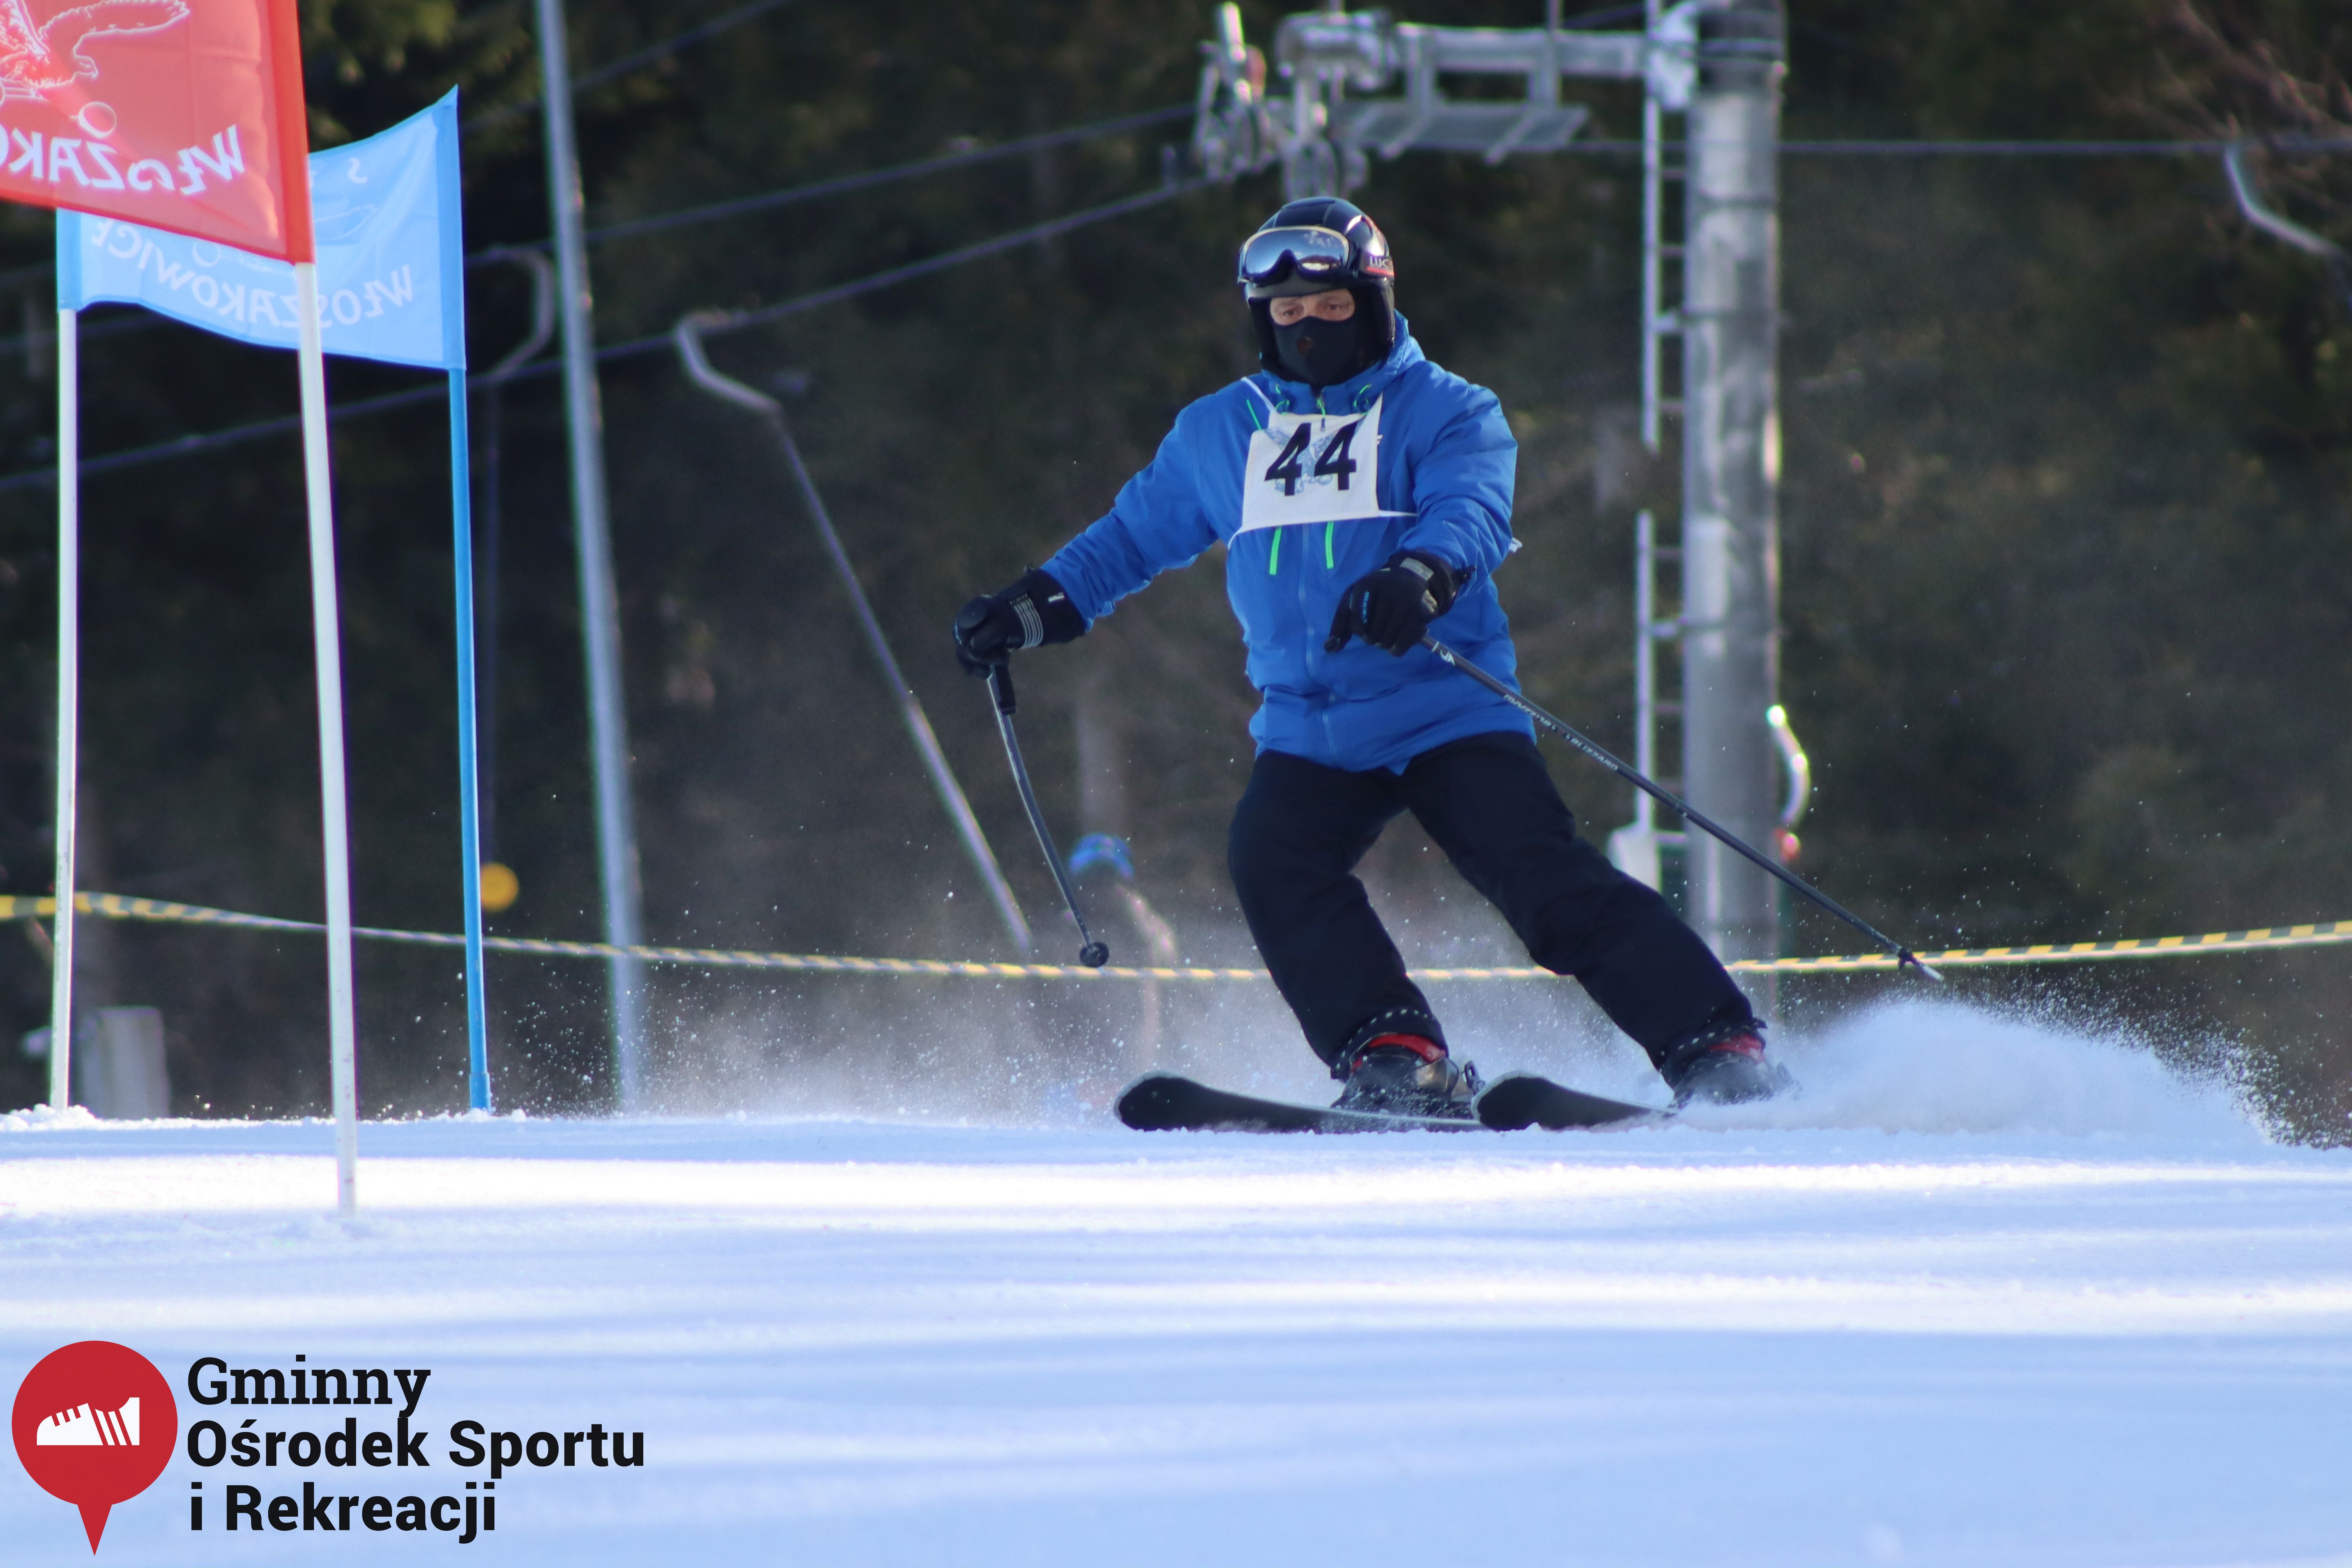 2022.02.12 - 18. Mistrzostwa Gminy Woszakowice w narciarstwie042.jpg - 1,51 MB